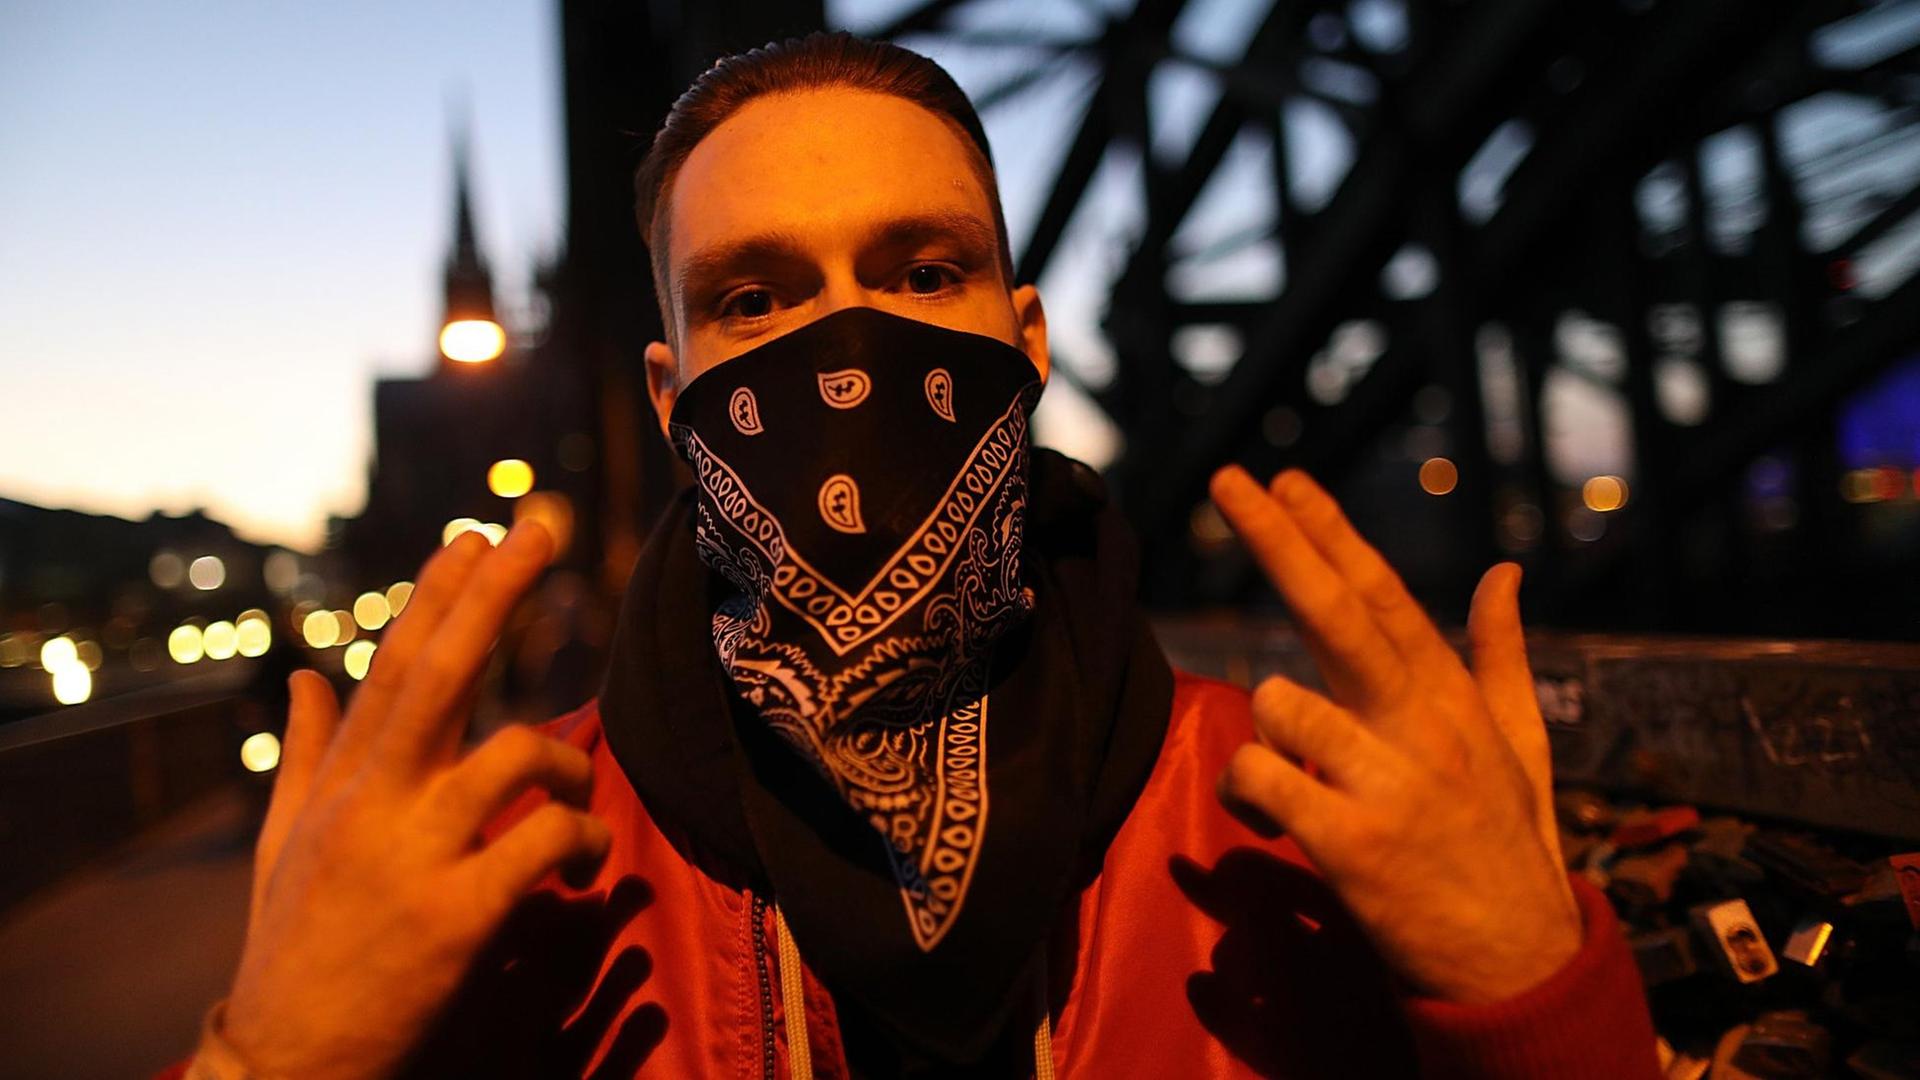 Der Rapper Spongebozz alias Sun Diego (bürgerlicher Name: Dimitri Aleksandrovic Chpakov) streckt die ersten drei Finger beider Hände nach oben.